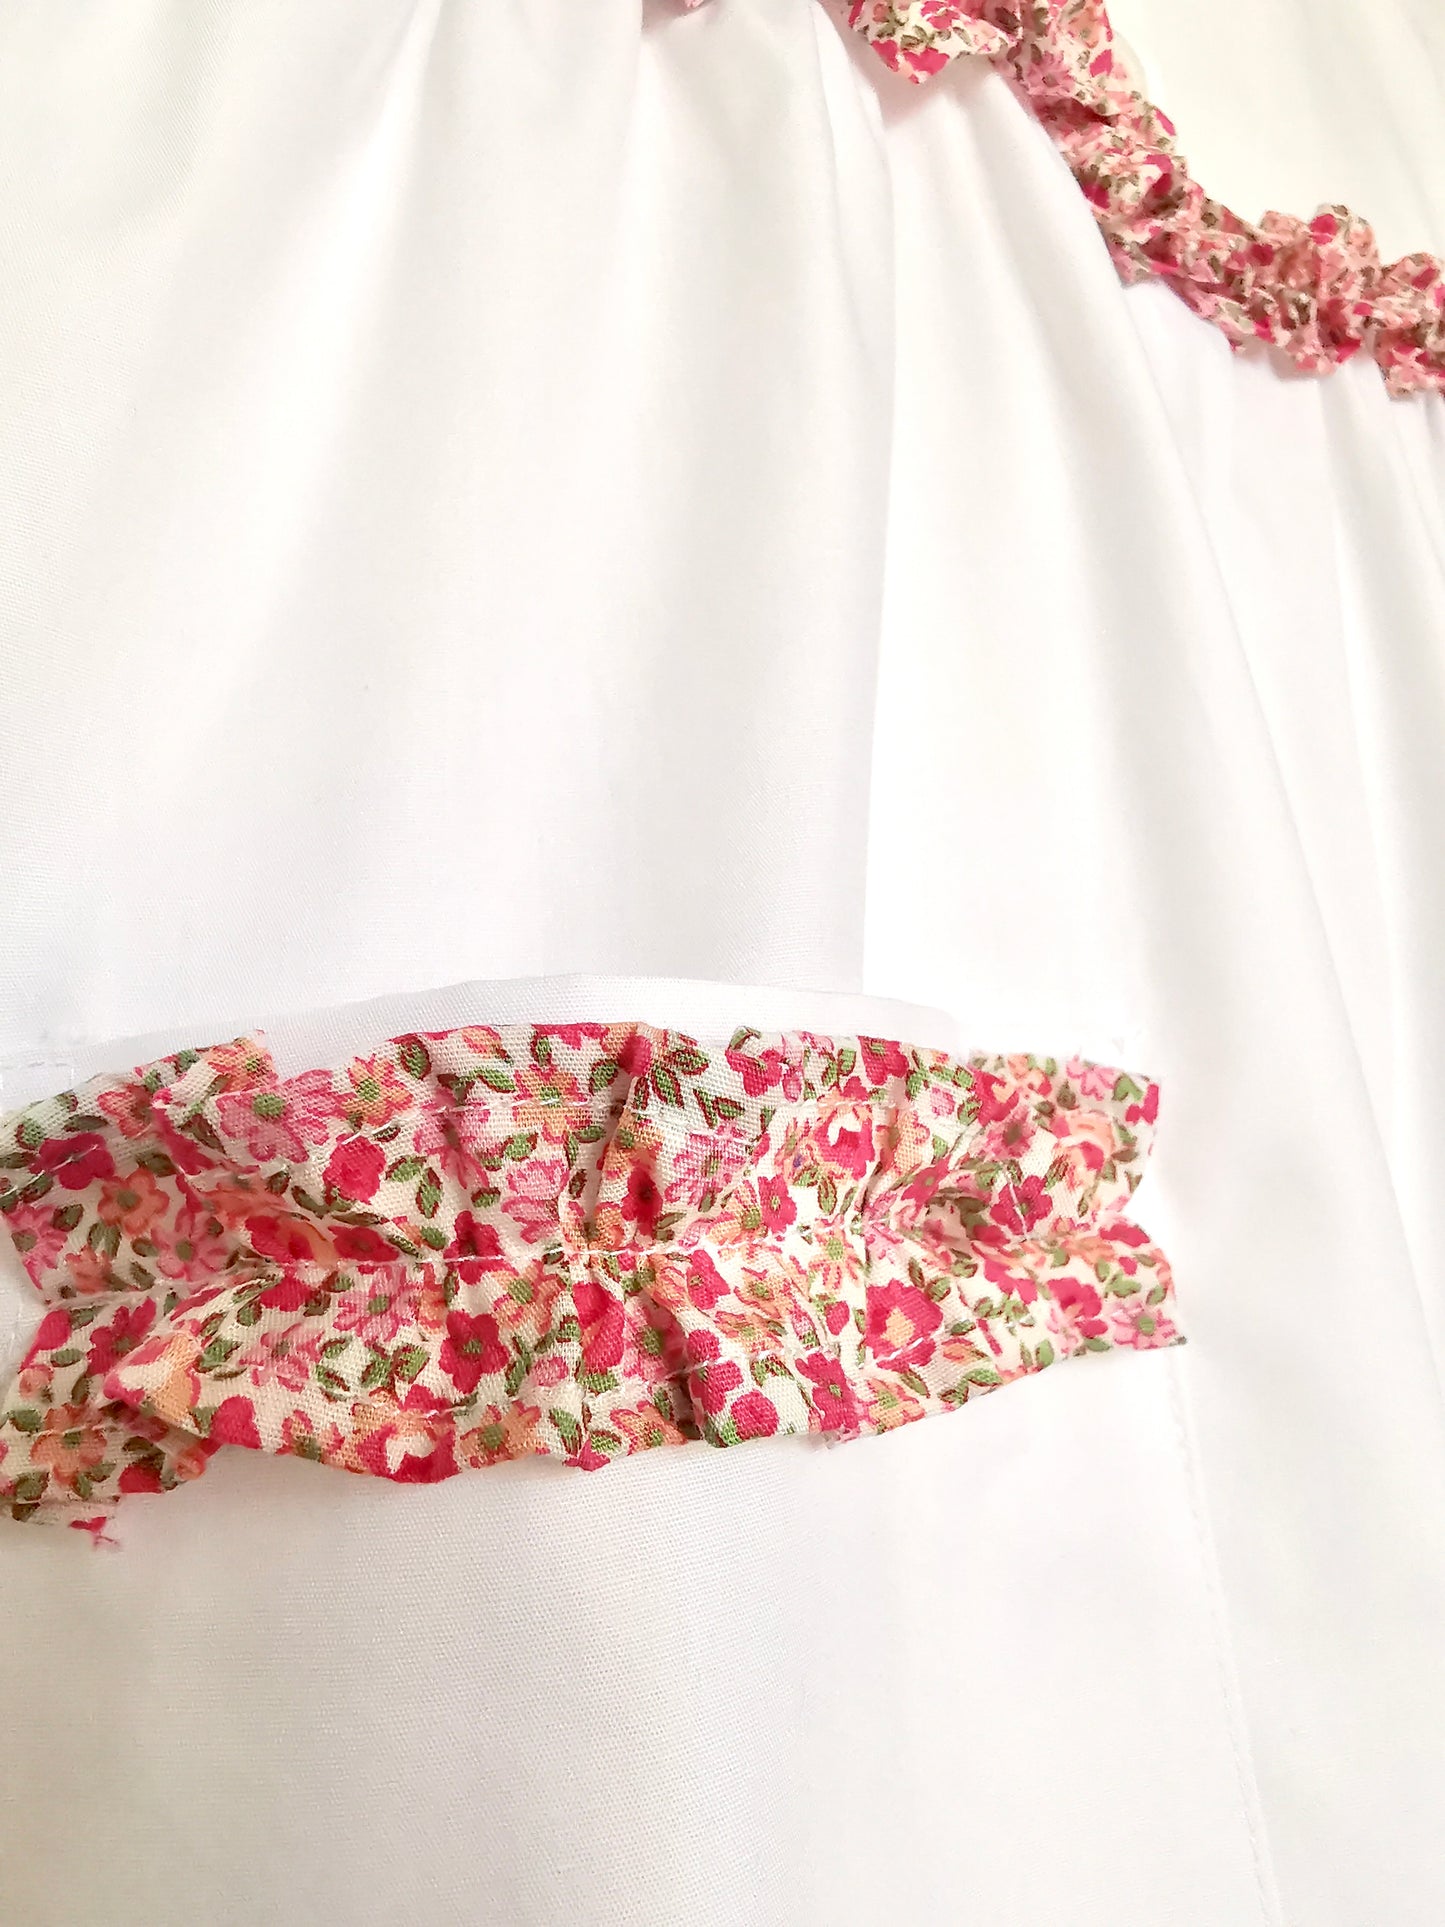 Il grembiulino bianco con le rouche rosa  - grembiule in cotone bianco per scuola primaria con colletto tondo